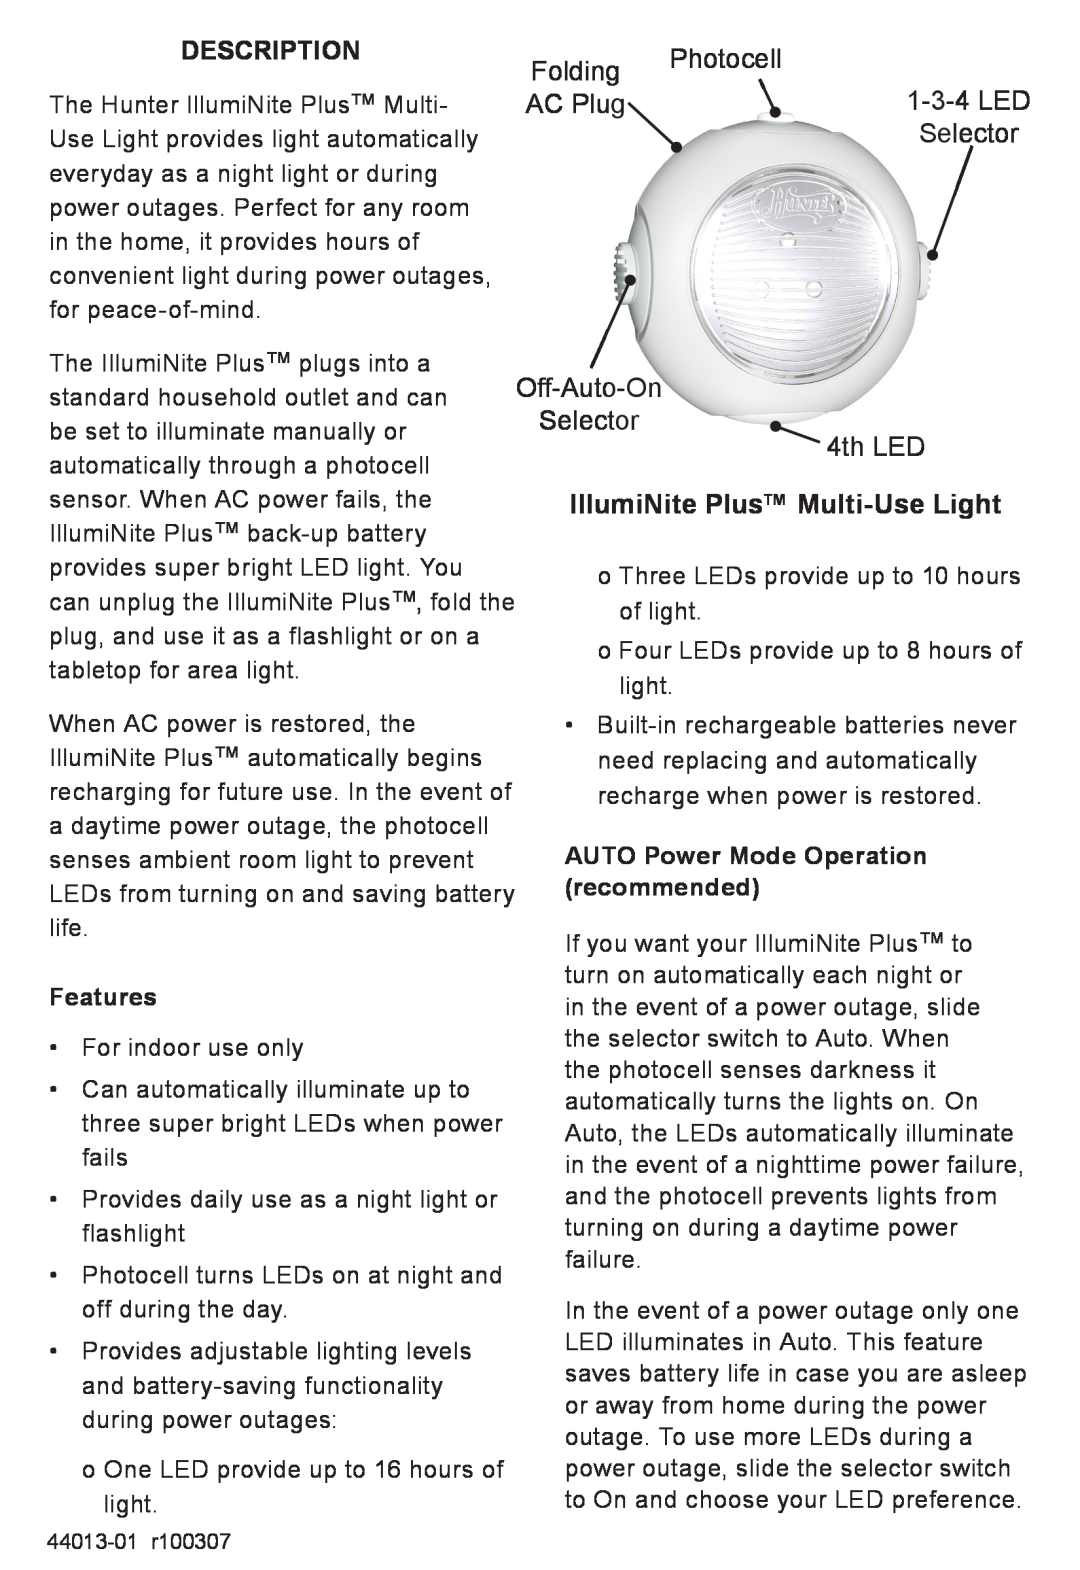 Hunter Fan 45190 Description, IllumiNite Plus Multi-UseLight, Folding, Photocell, 1-3-4LED, AC Plug, Selector, Features 